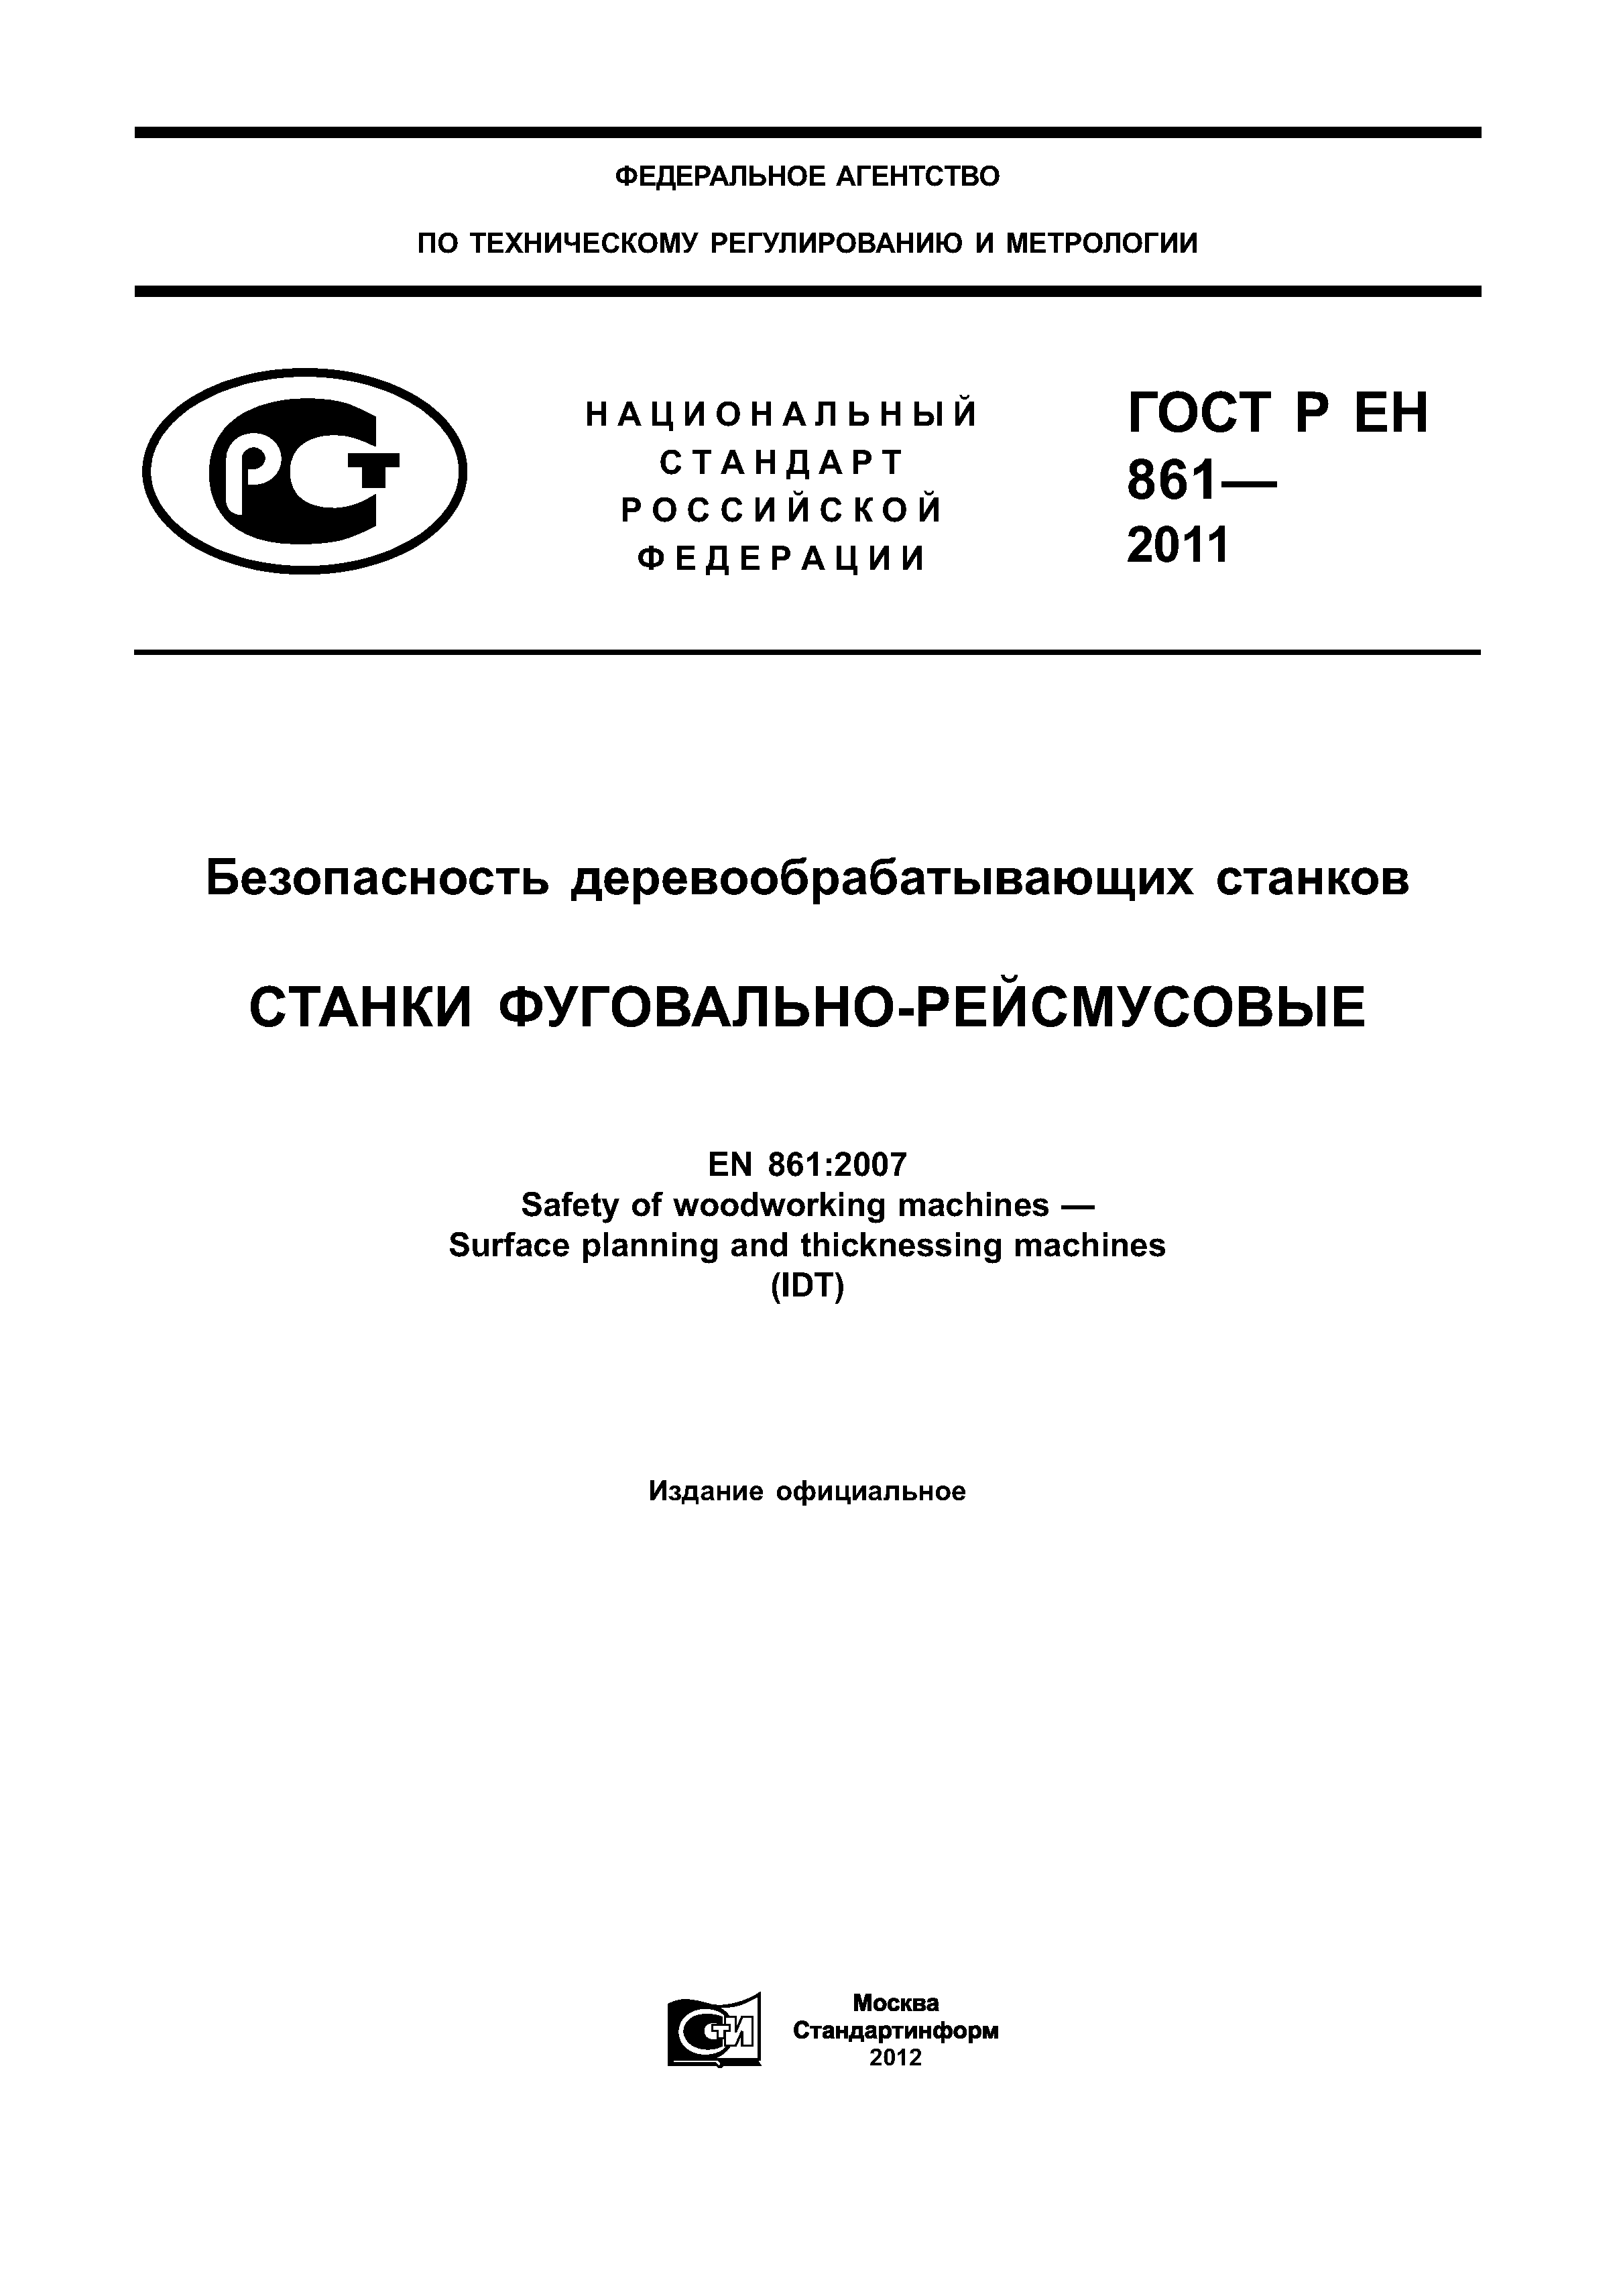 ГОСТ Р ЕН 861-2011